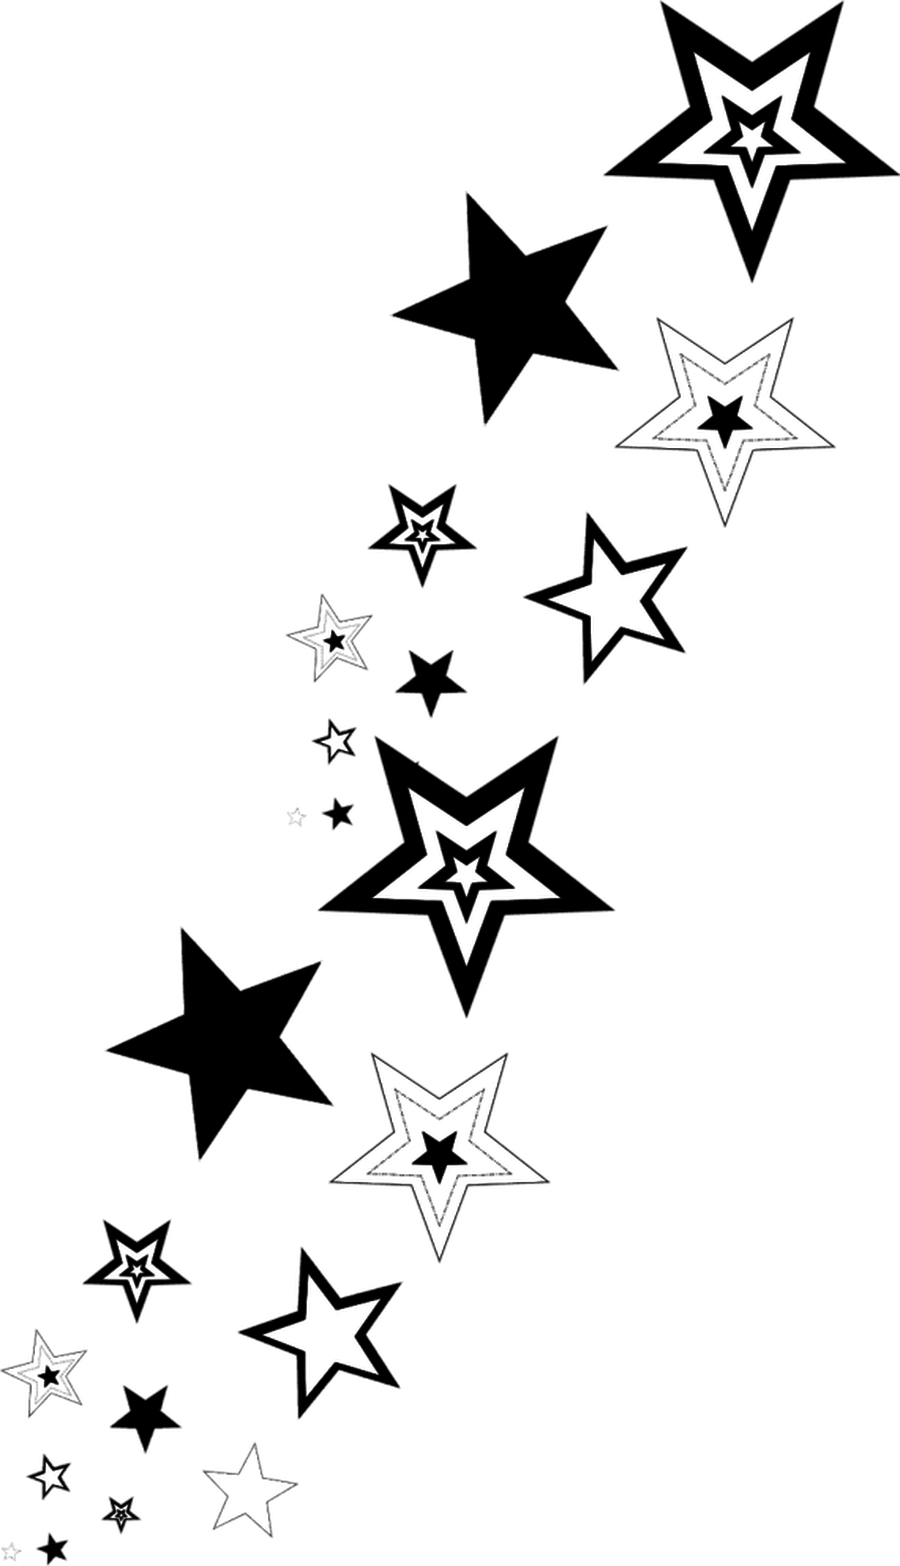 black star clip art